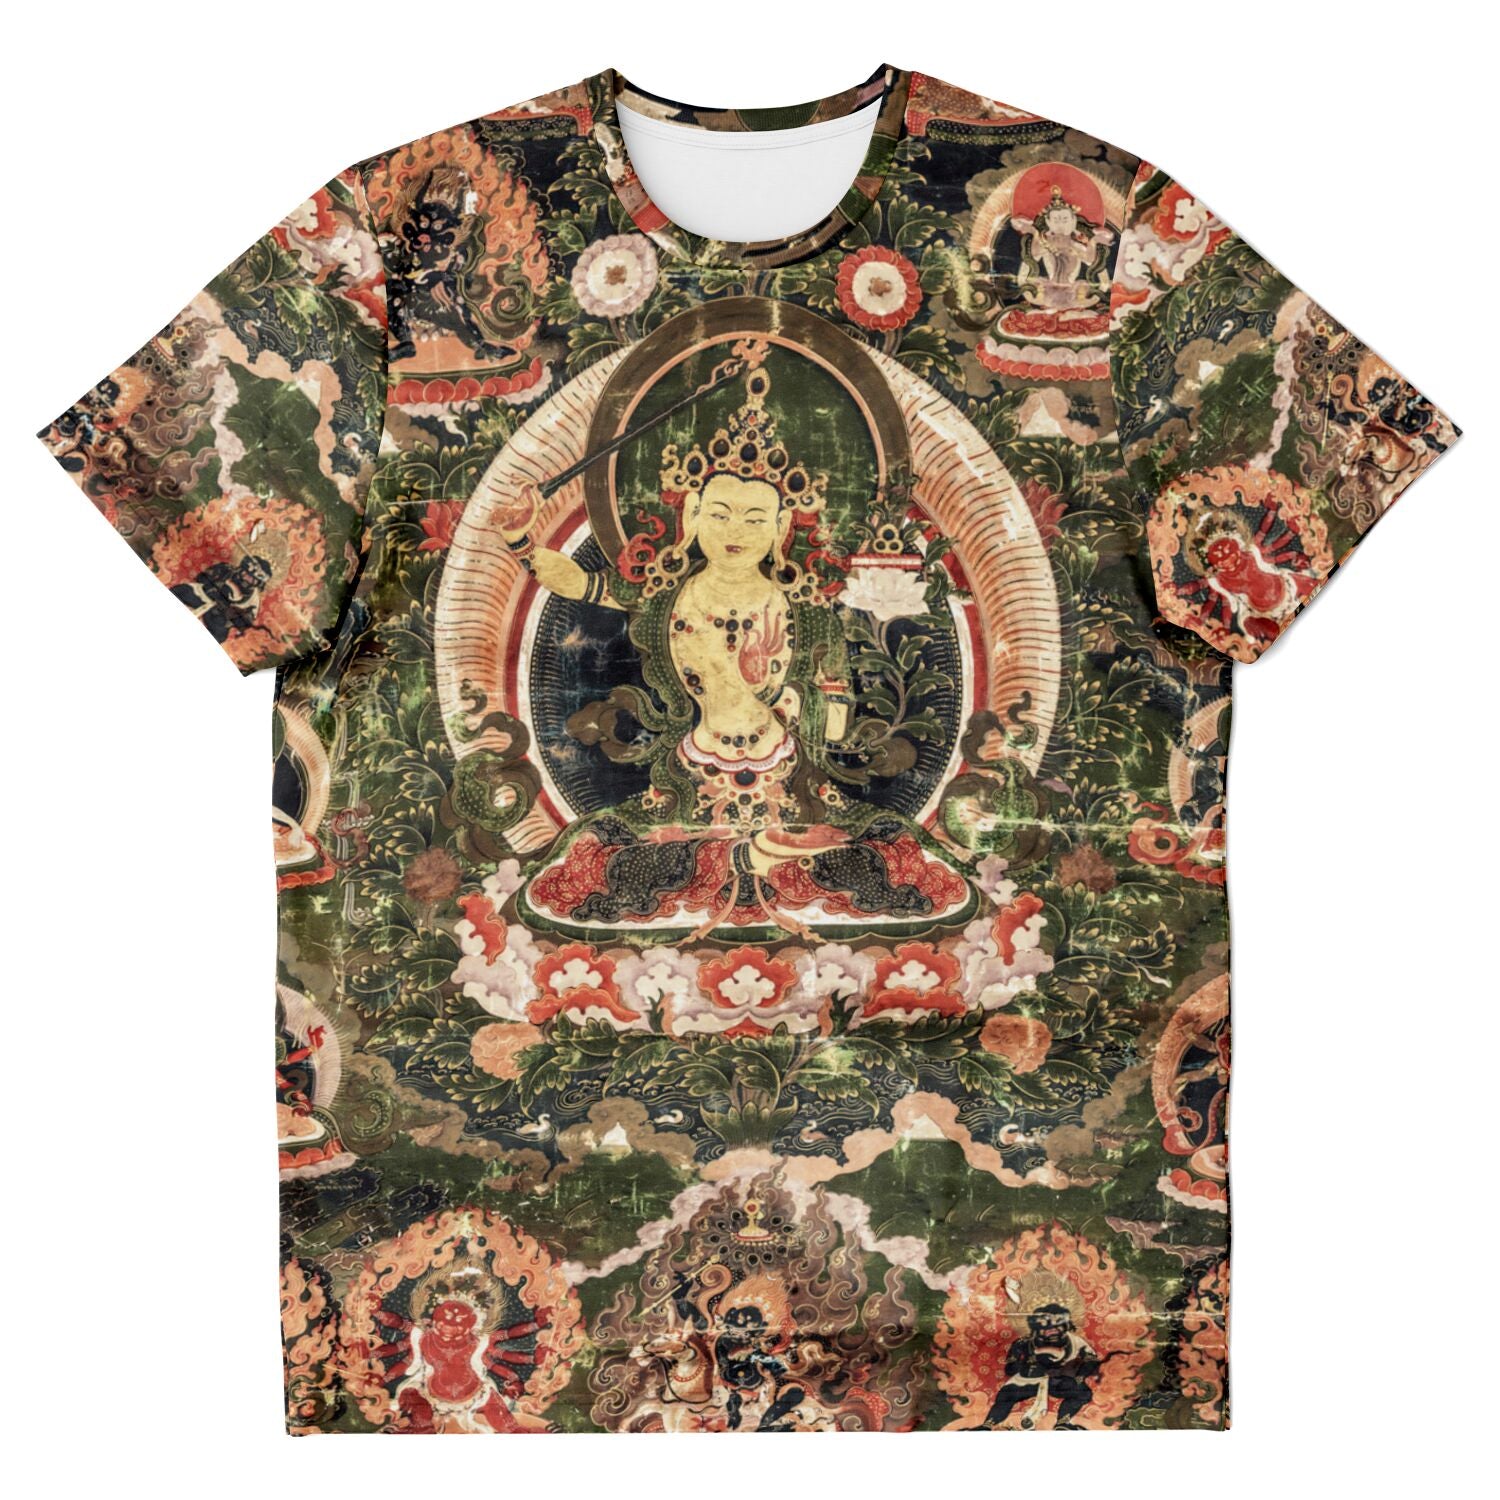 T-shirt XS Manjusri Bodhisattva Zen Patriarch | Tibetan Buddhist Mythology | Buddha Meditation and Mindfulness Vintage Graphic Art T-Shirt